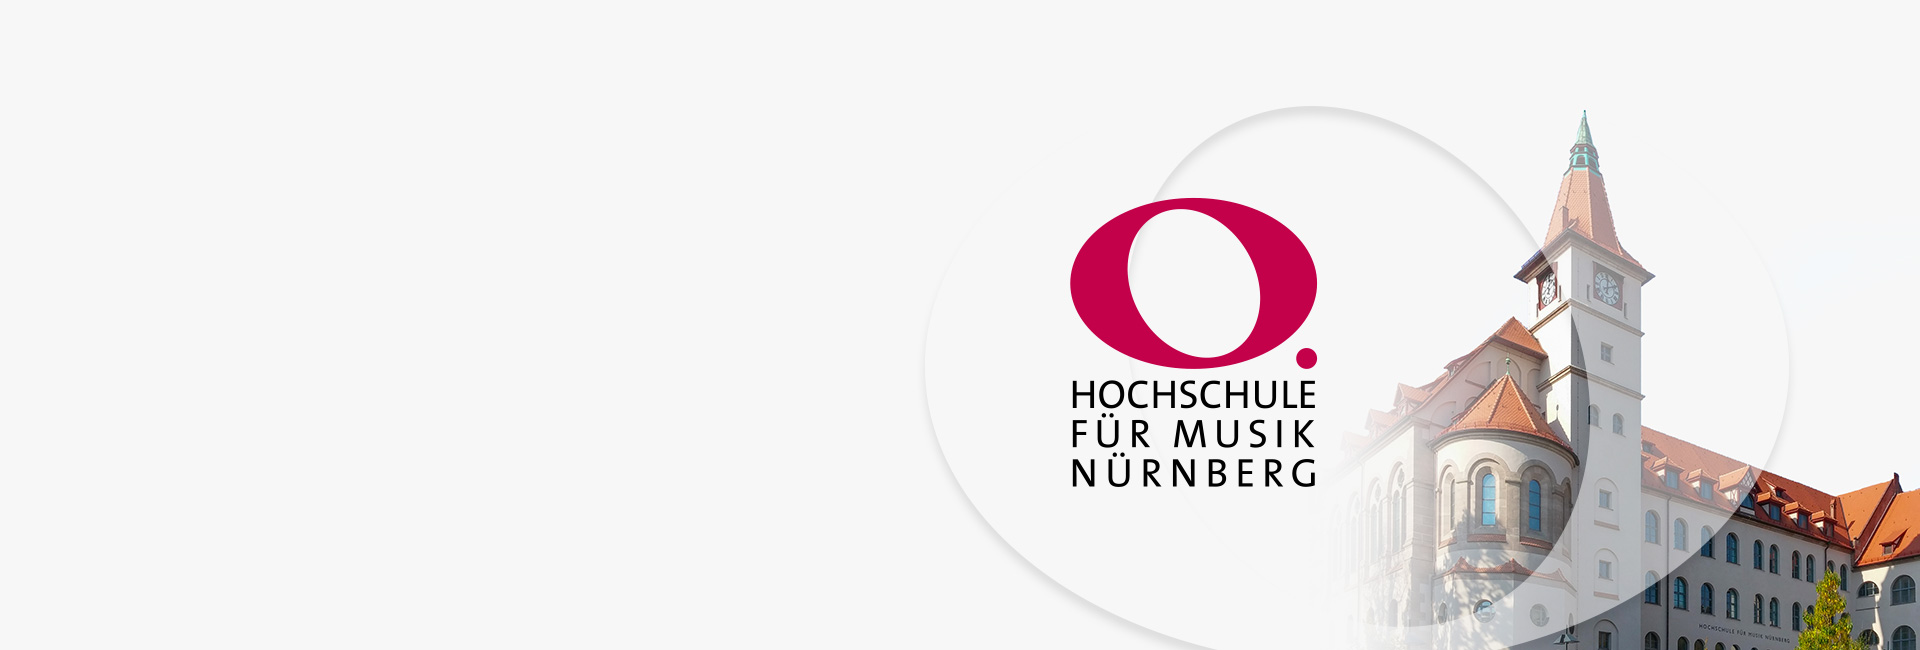 Projektreferenz Hochschule für Musik Nürnberg